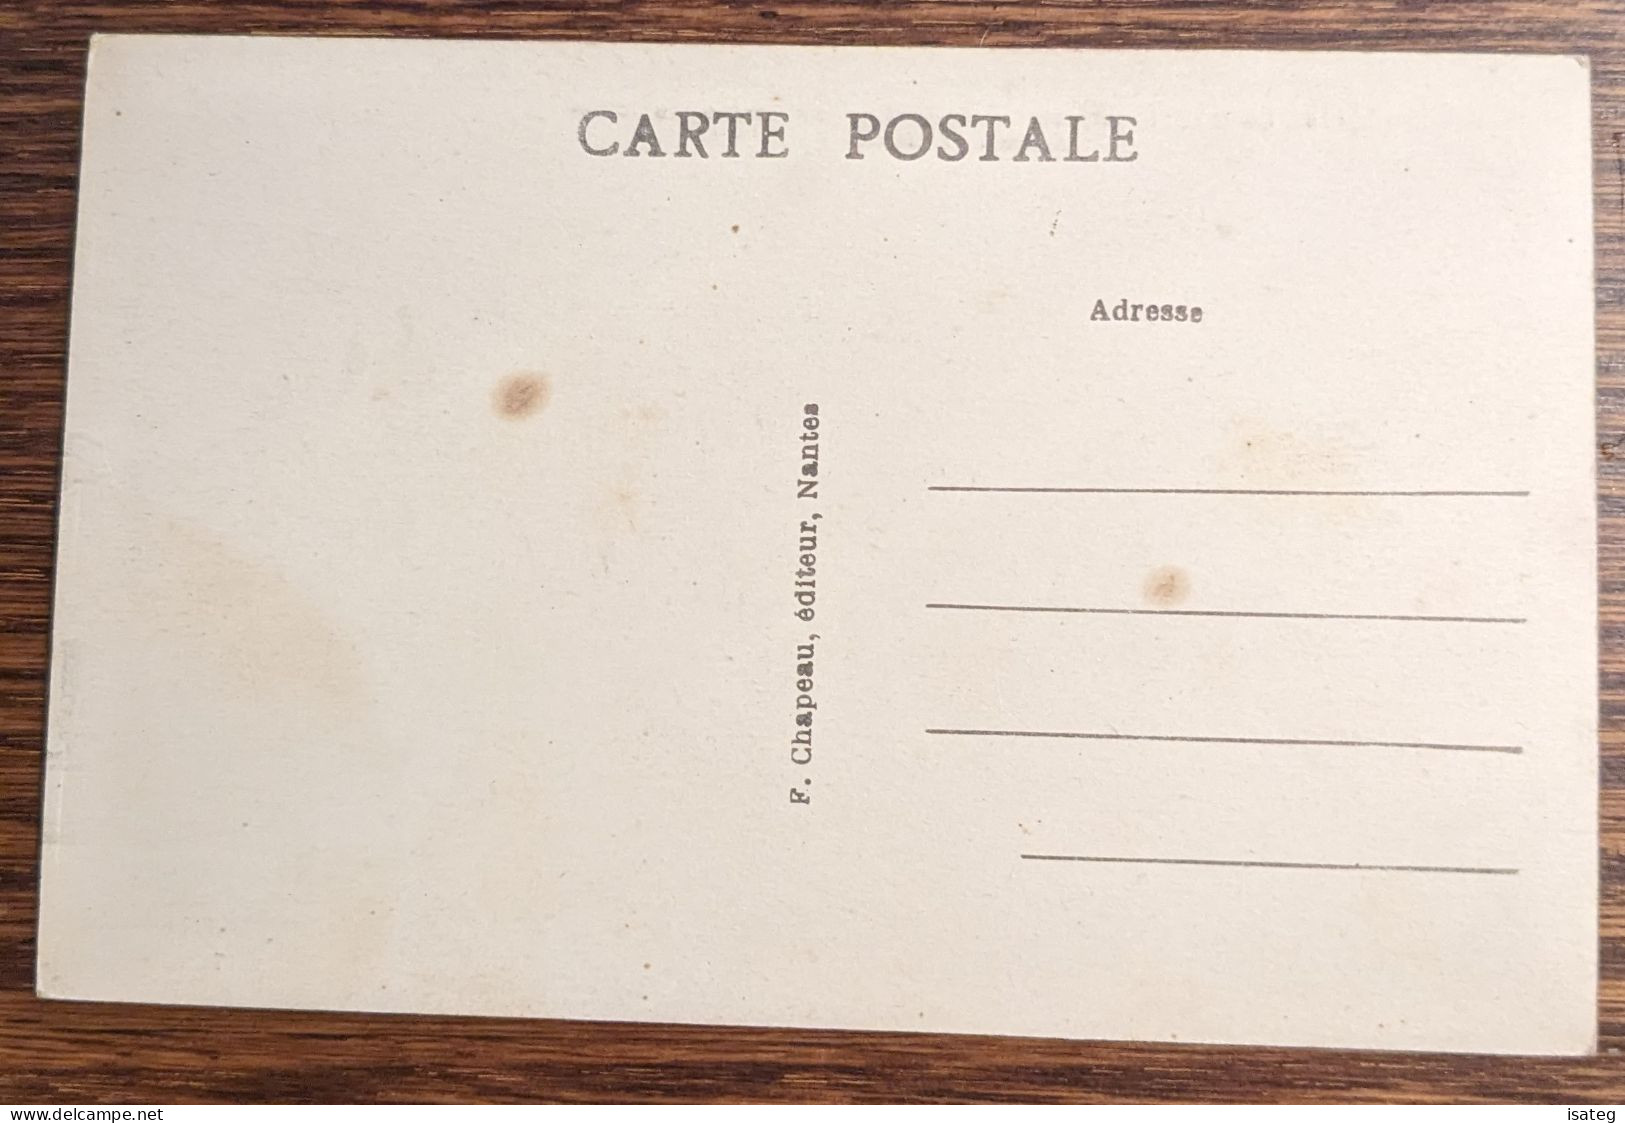 Carte Postale Ancienne Colorisée : La Baule Sur Mer - Le Casino Municipal - Unclassified